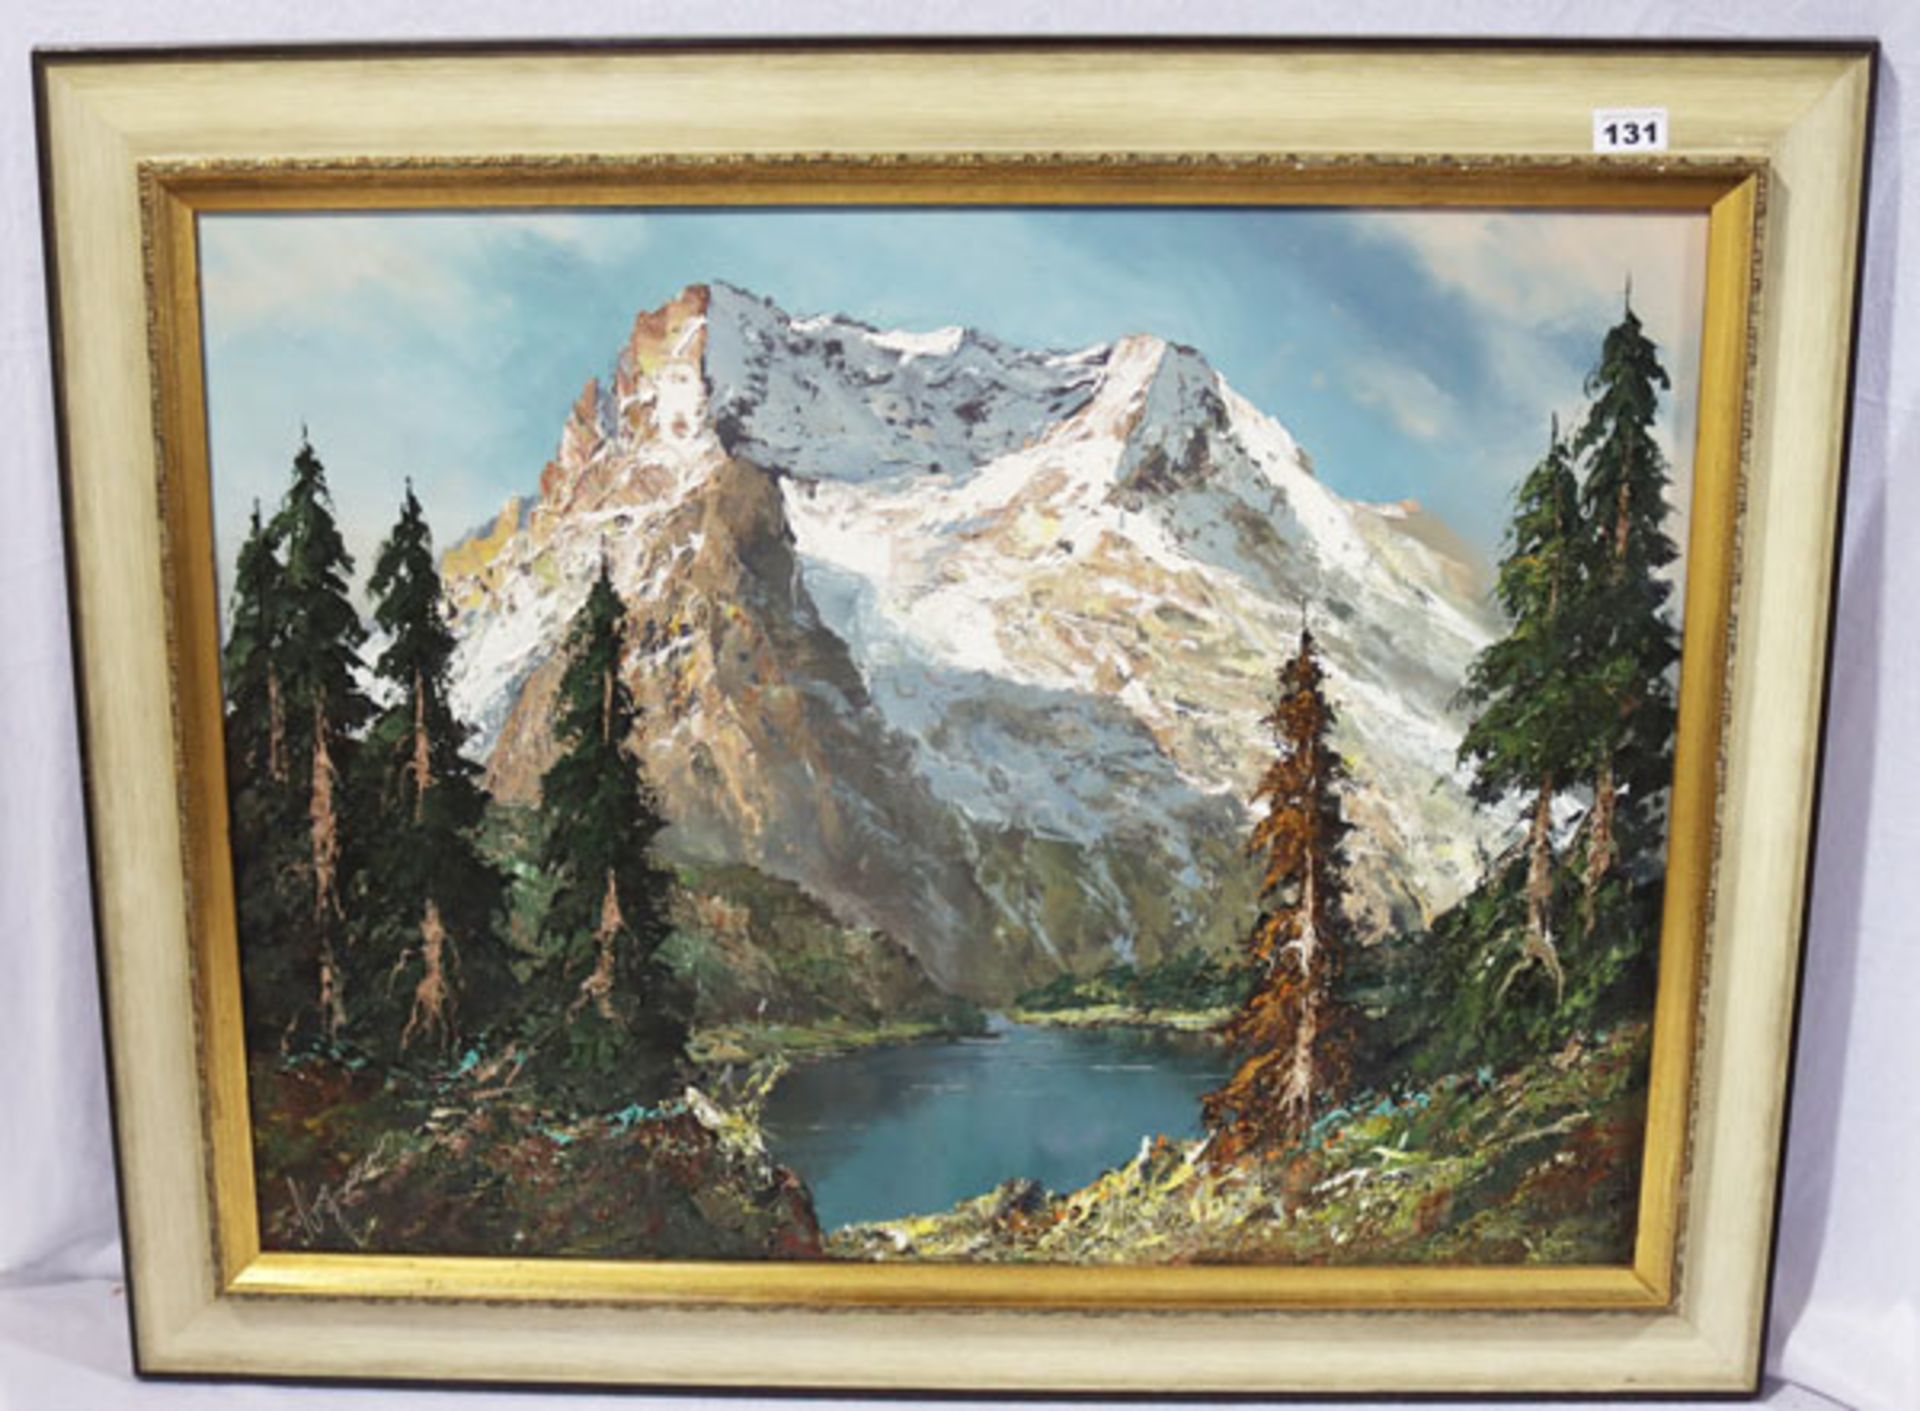 Gemälde ÖL/LW 'Hochgebirgs-Szenerie mit See', undeutlich signiert, gerahmt, incl. Rahmen 75 cm x